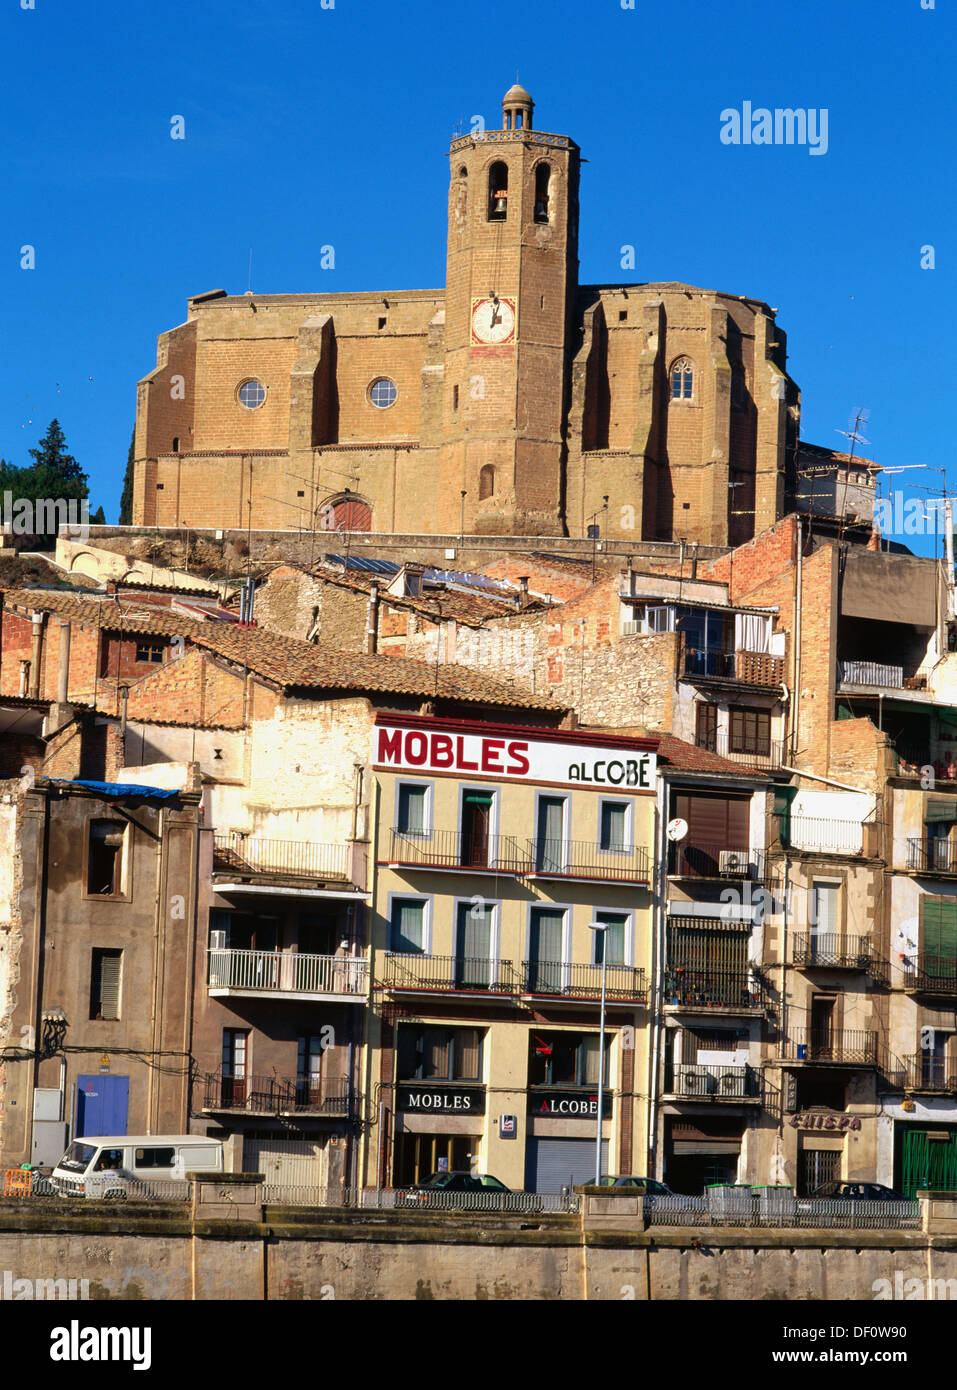 Balaguer lleida catalonia fotografías e imágenes de alta resolución - Alamy